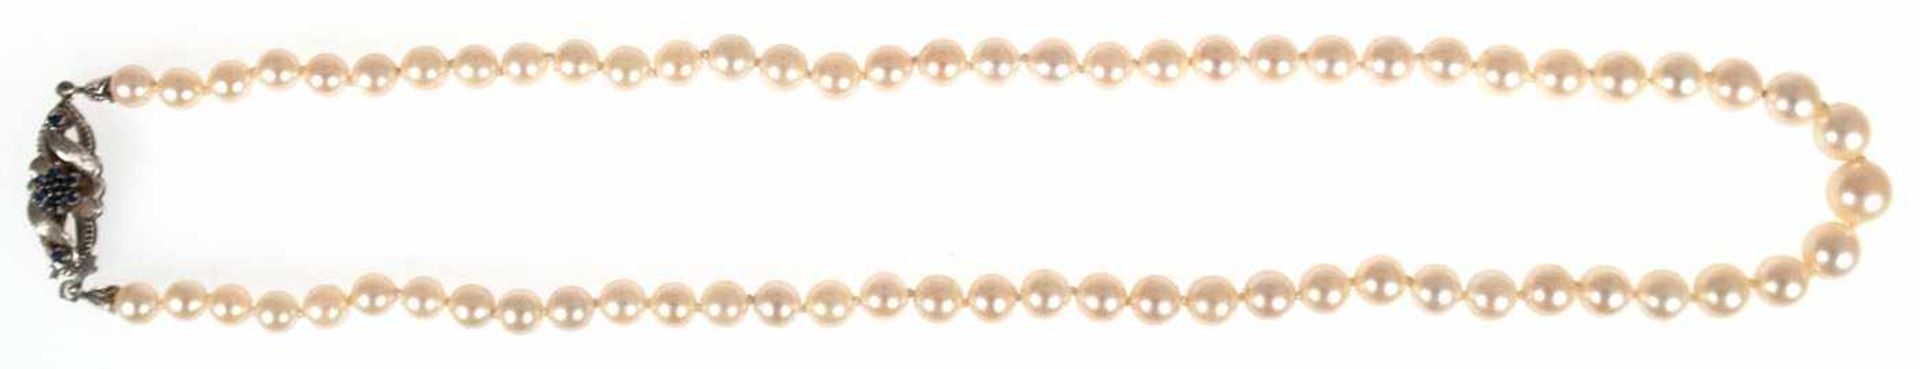 Perlenkette, Perlen im Verlauf, Dm. 8,5 mm-5,5 mm, Schließe 750er WG, besetzt mit Saphiren, L. 49